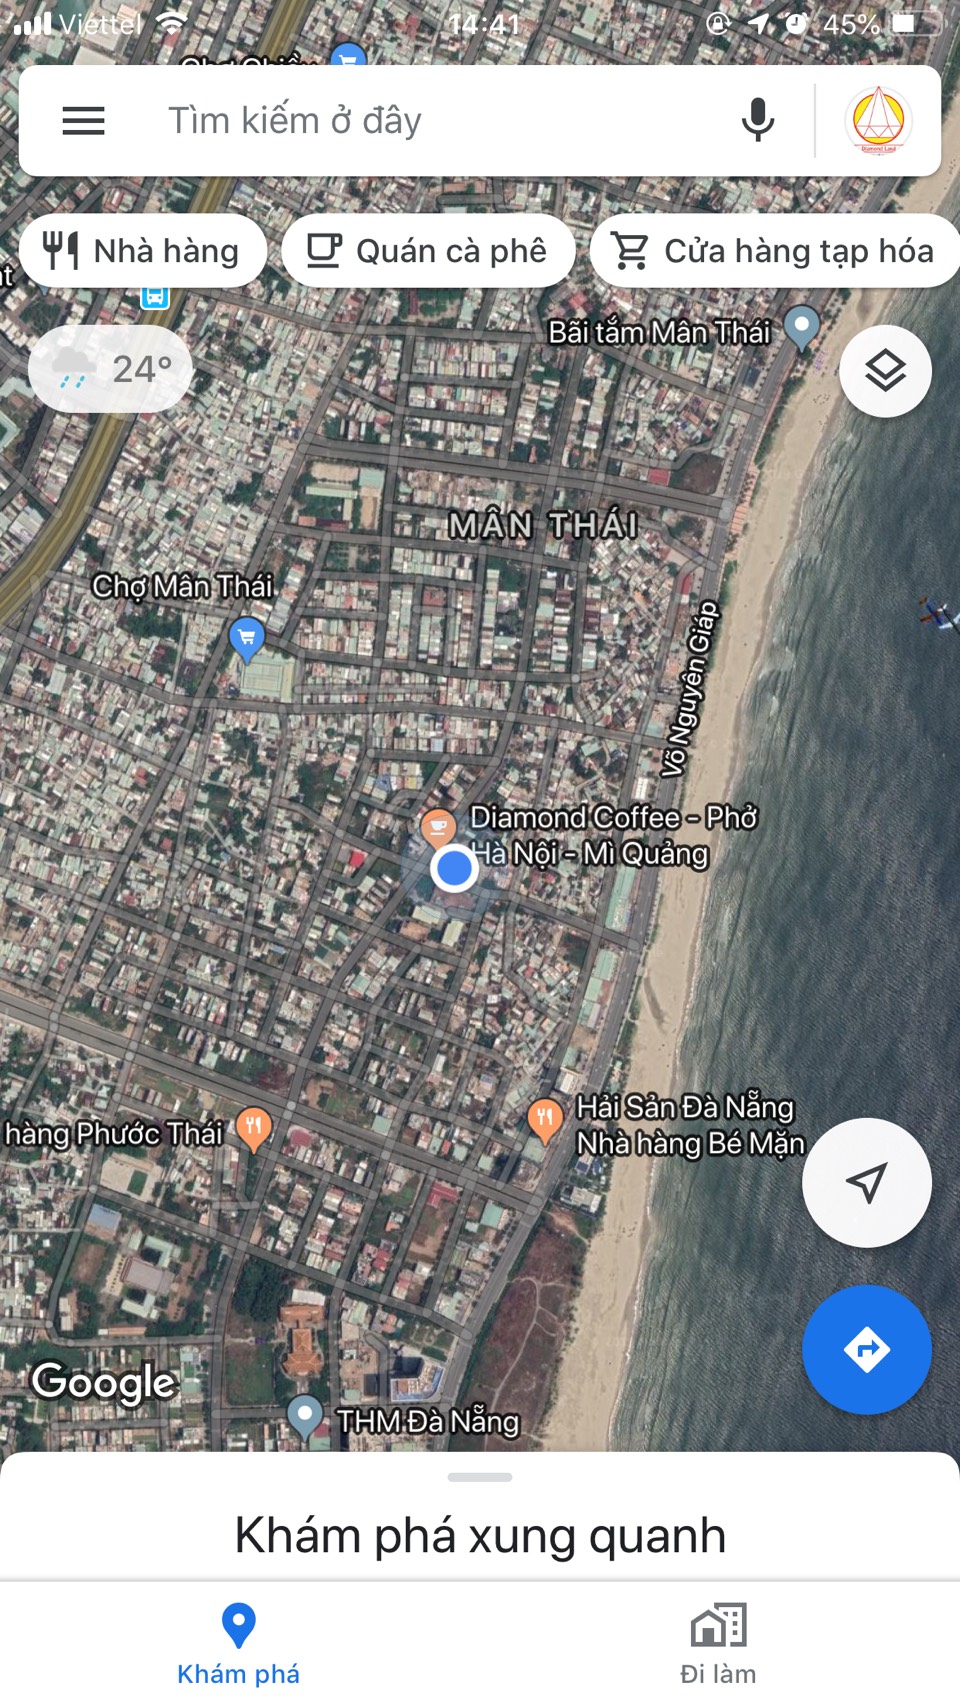 Bán 185 m2 đất đường Hà Kì Ngộ,Đà Nẵng gần biển,gần CH Diamond Land giá rất rẻ.LH ngay:0905.606.910